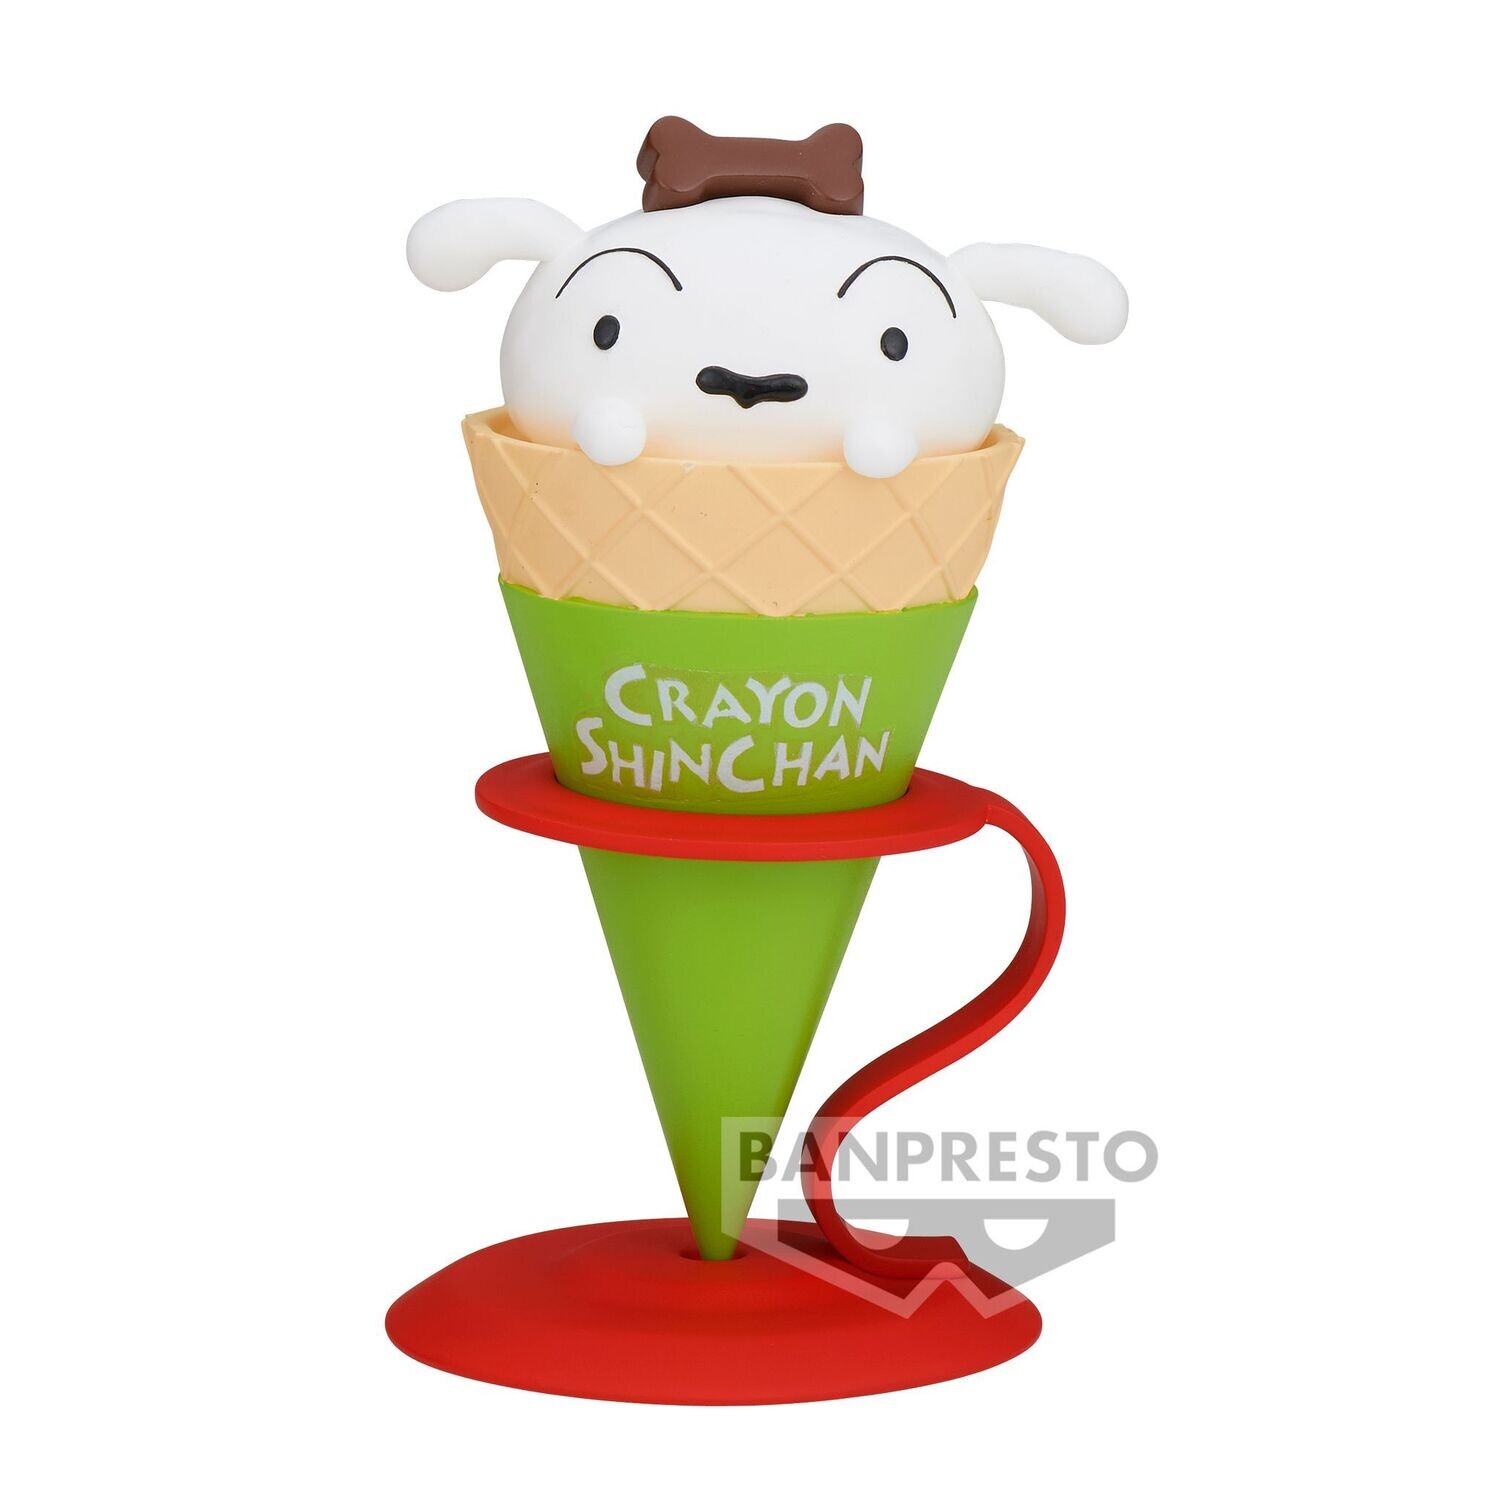 PRE-ORDER Banpresto Crayon Shinchan Ice Cream Collection Shiro